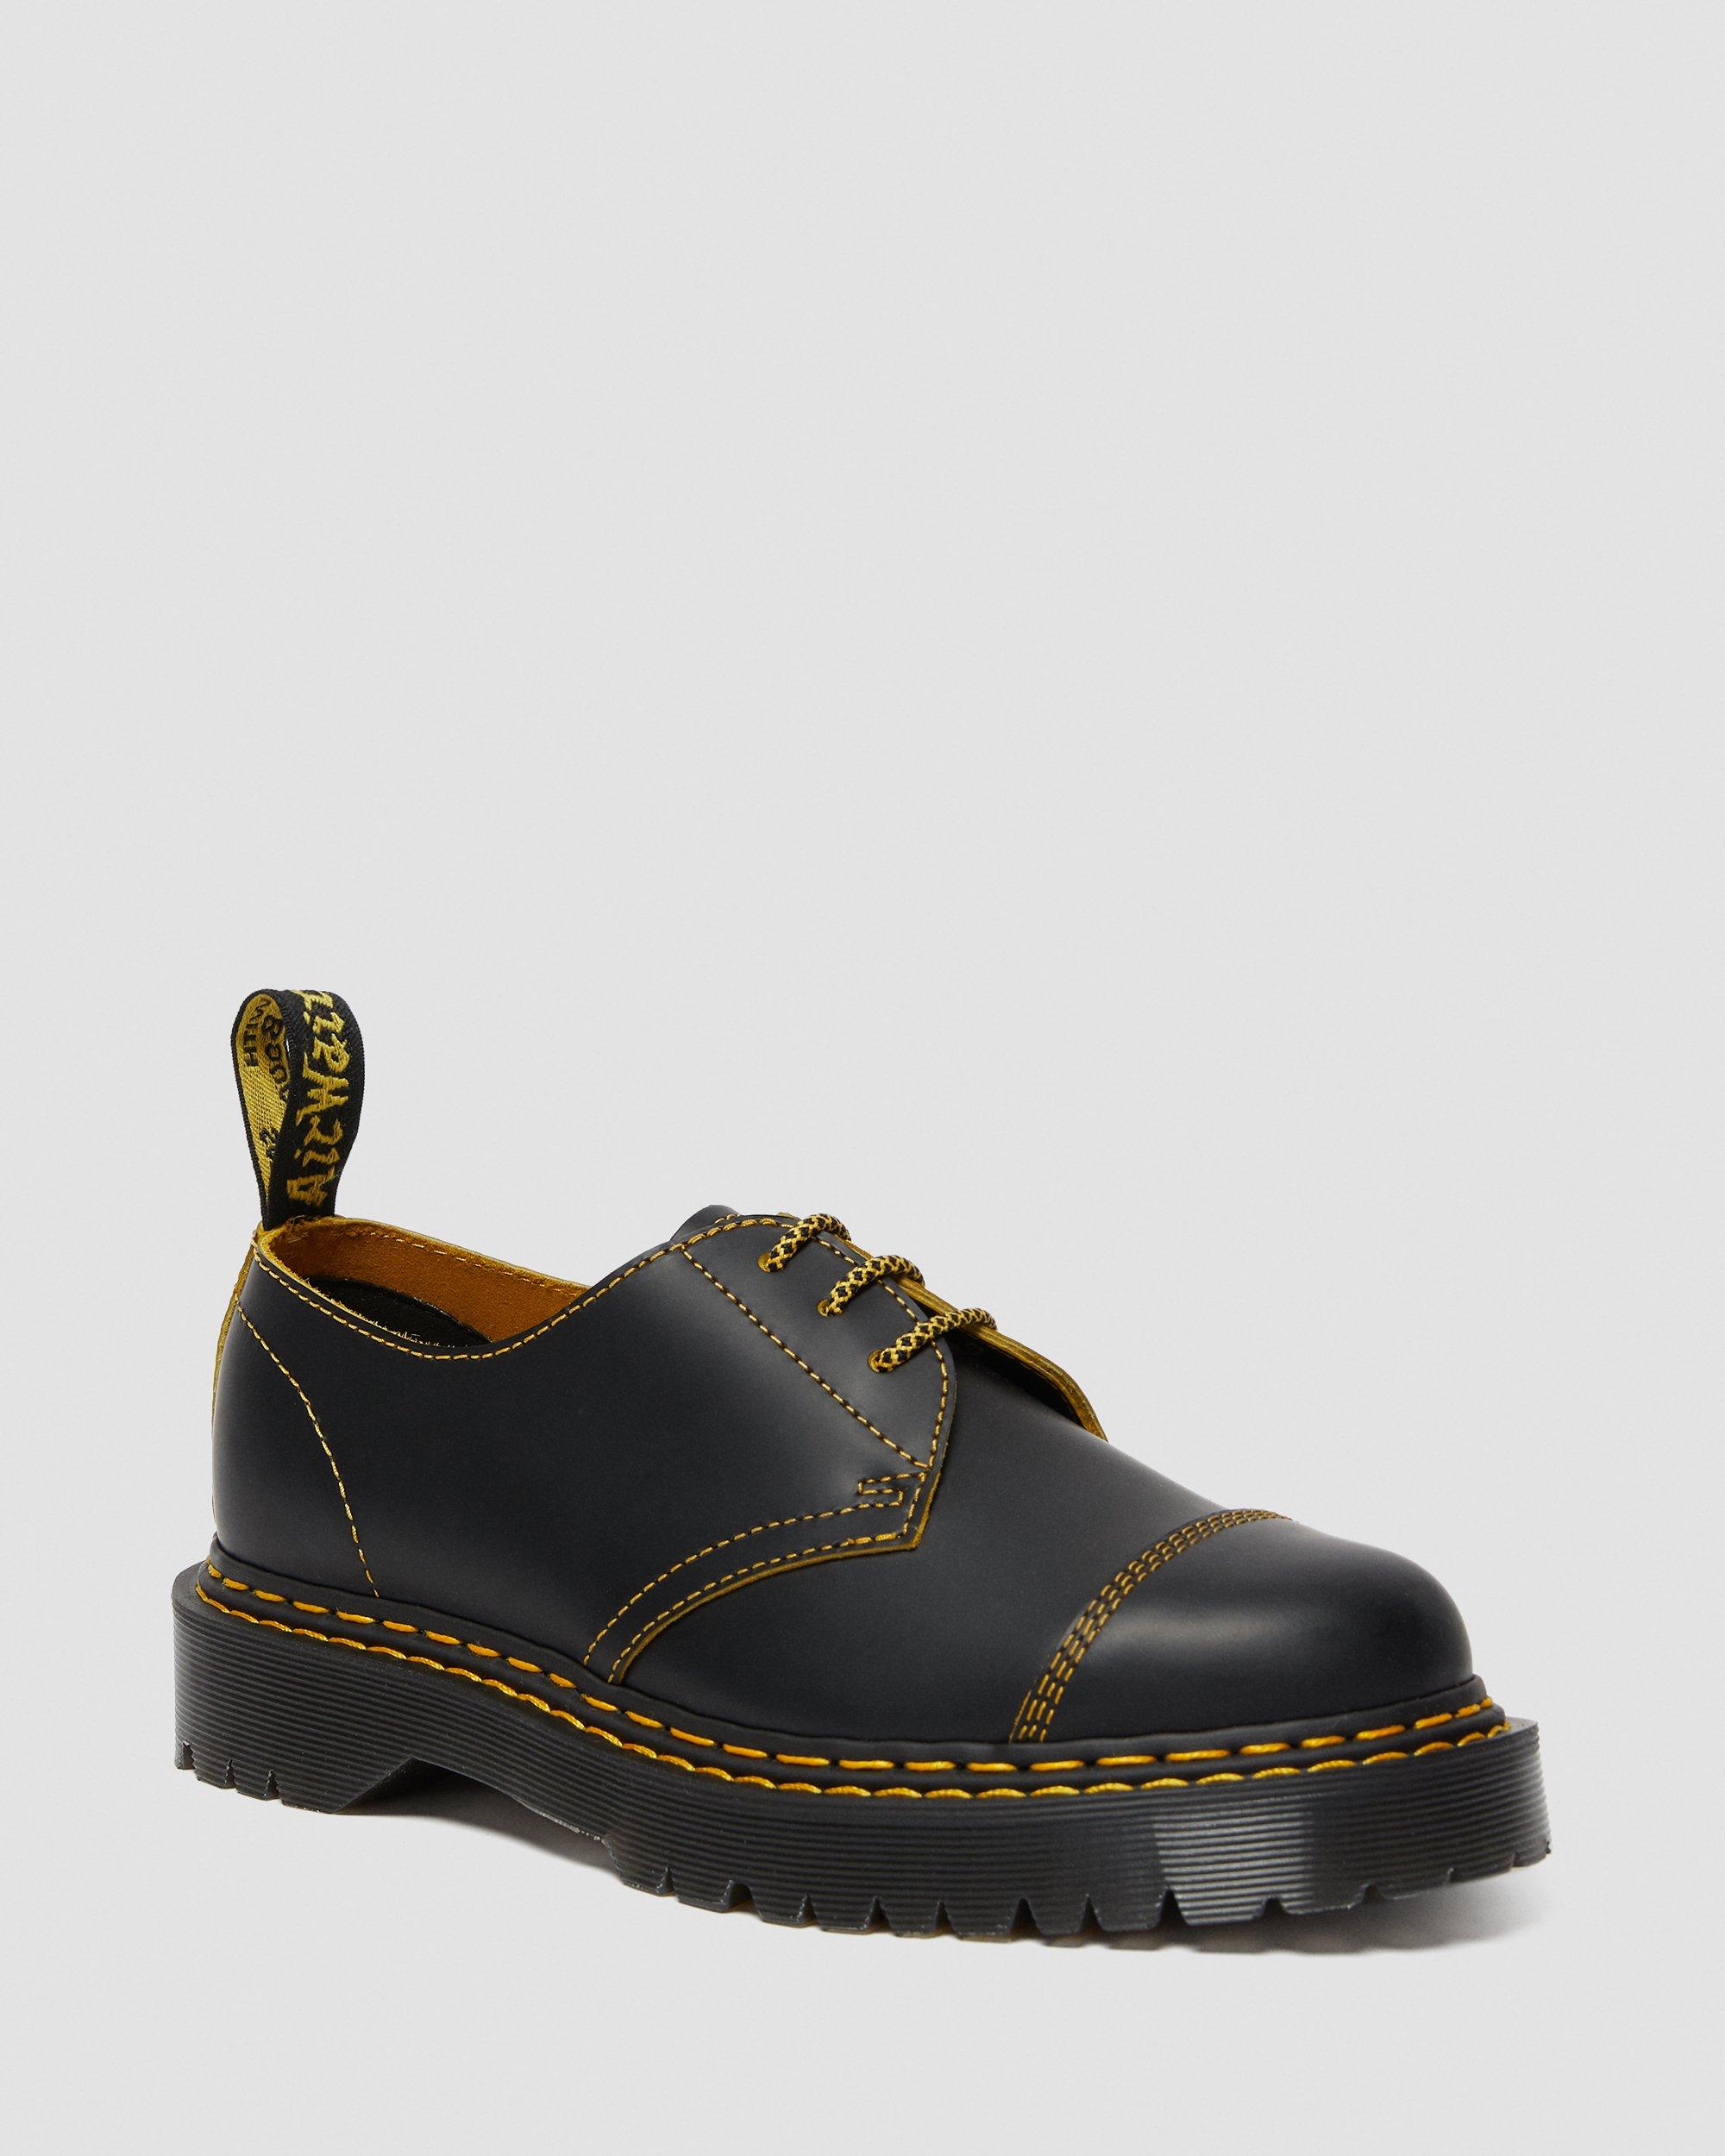 1461 Bex Double Stitch Leather Shoes, Black | Dr. Martens